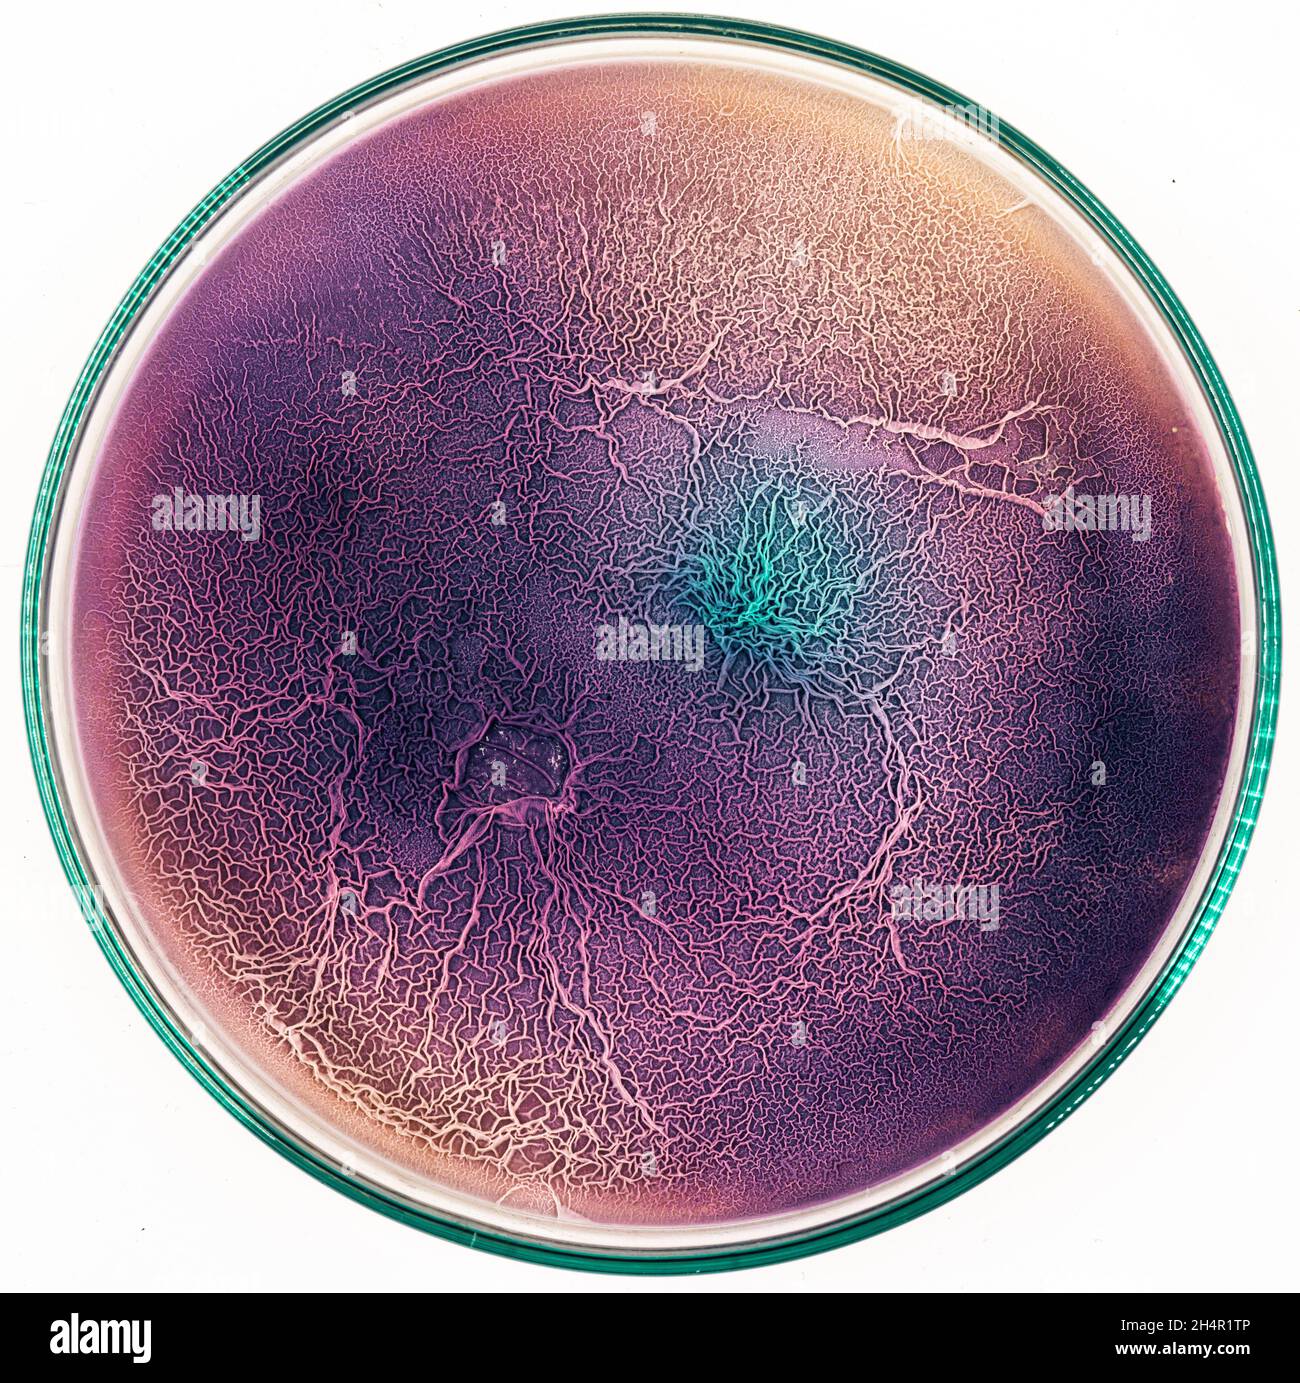 La surface du tissu biologique infecté par des micro-organismes pathogènes Banque D'Images